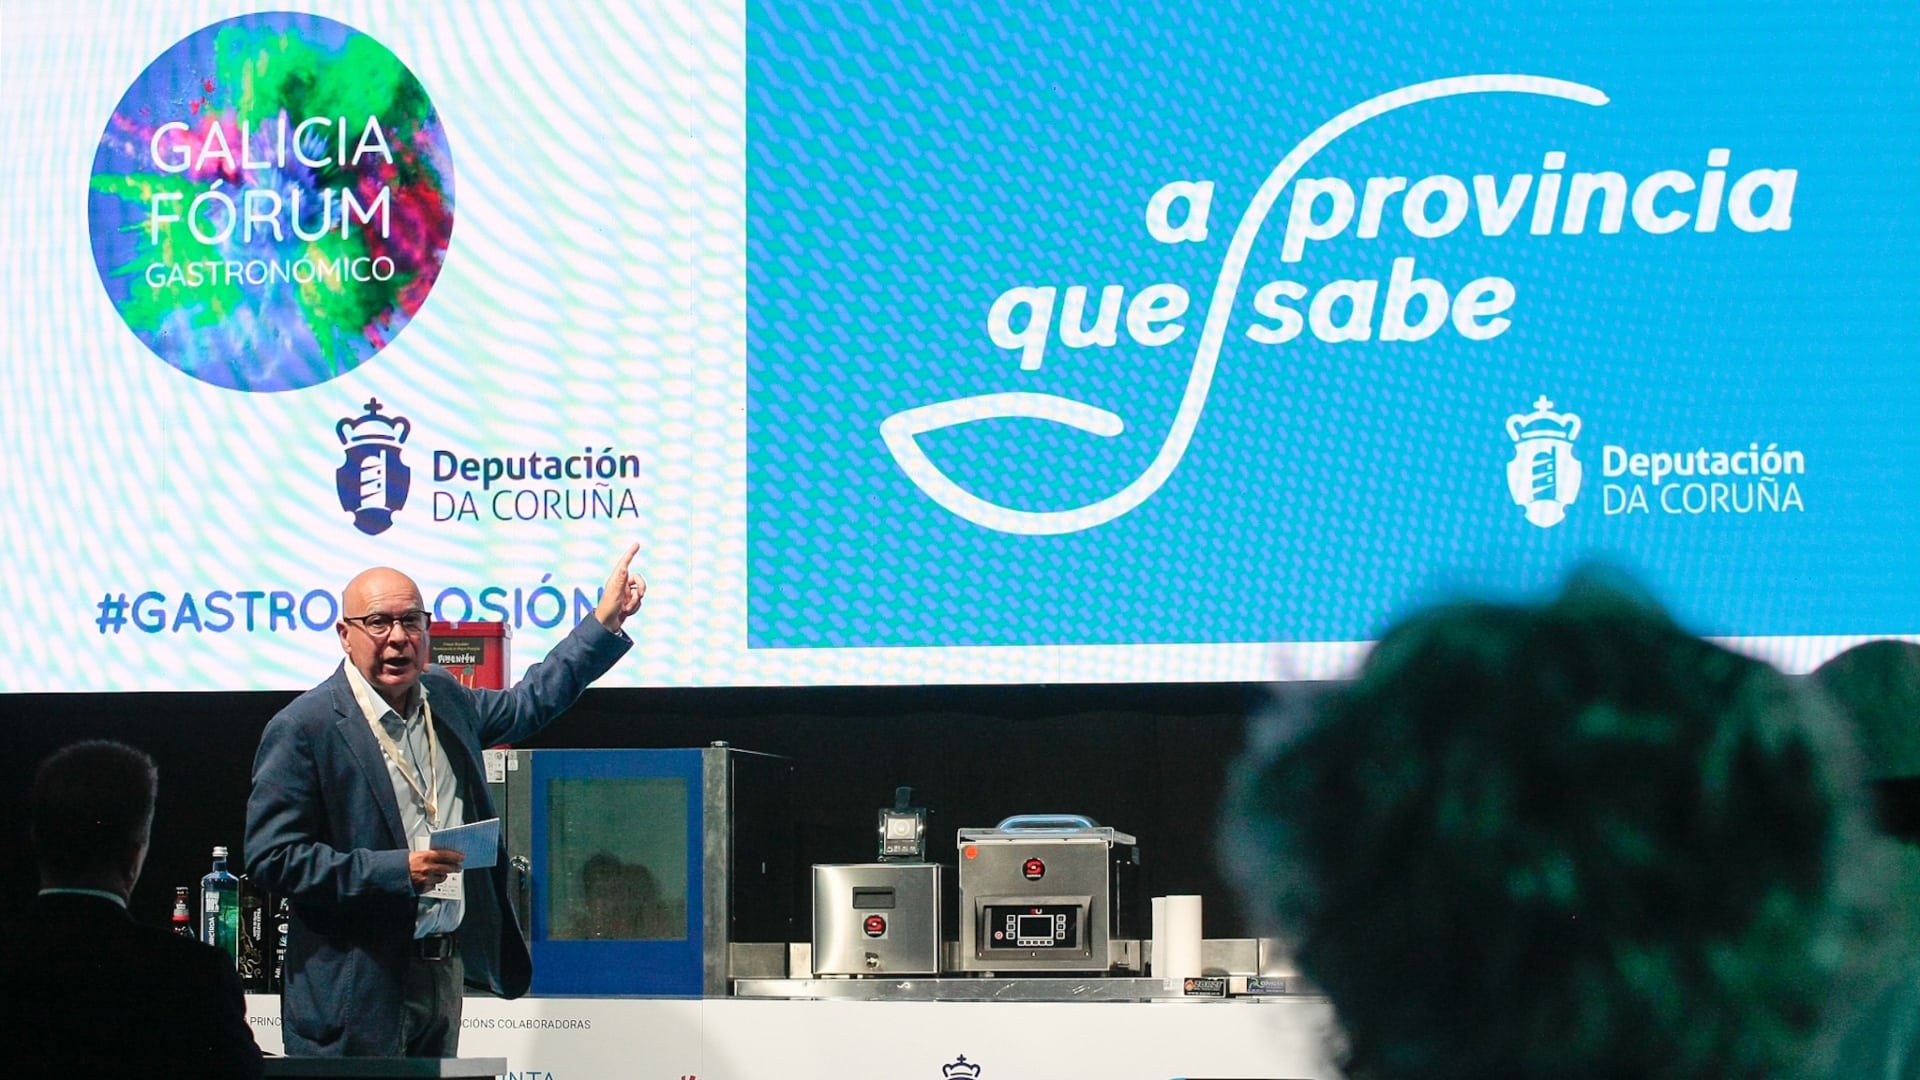 La presentación de "A provincia que sabe", la nueva marca turística y gastronómica de la Deputación da Coruña | DEPUTACIÓN DA CORUÑA